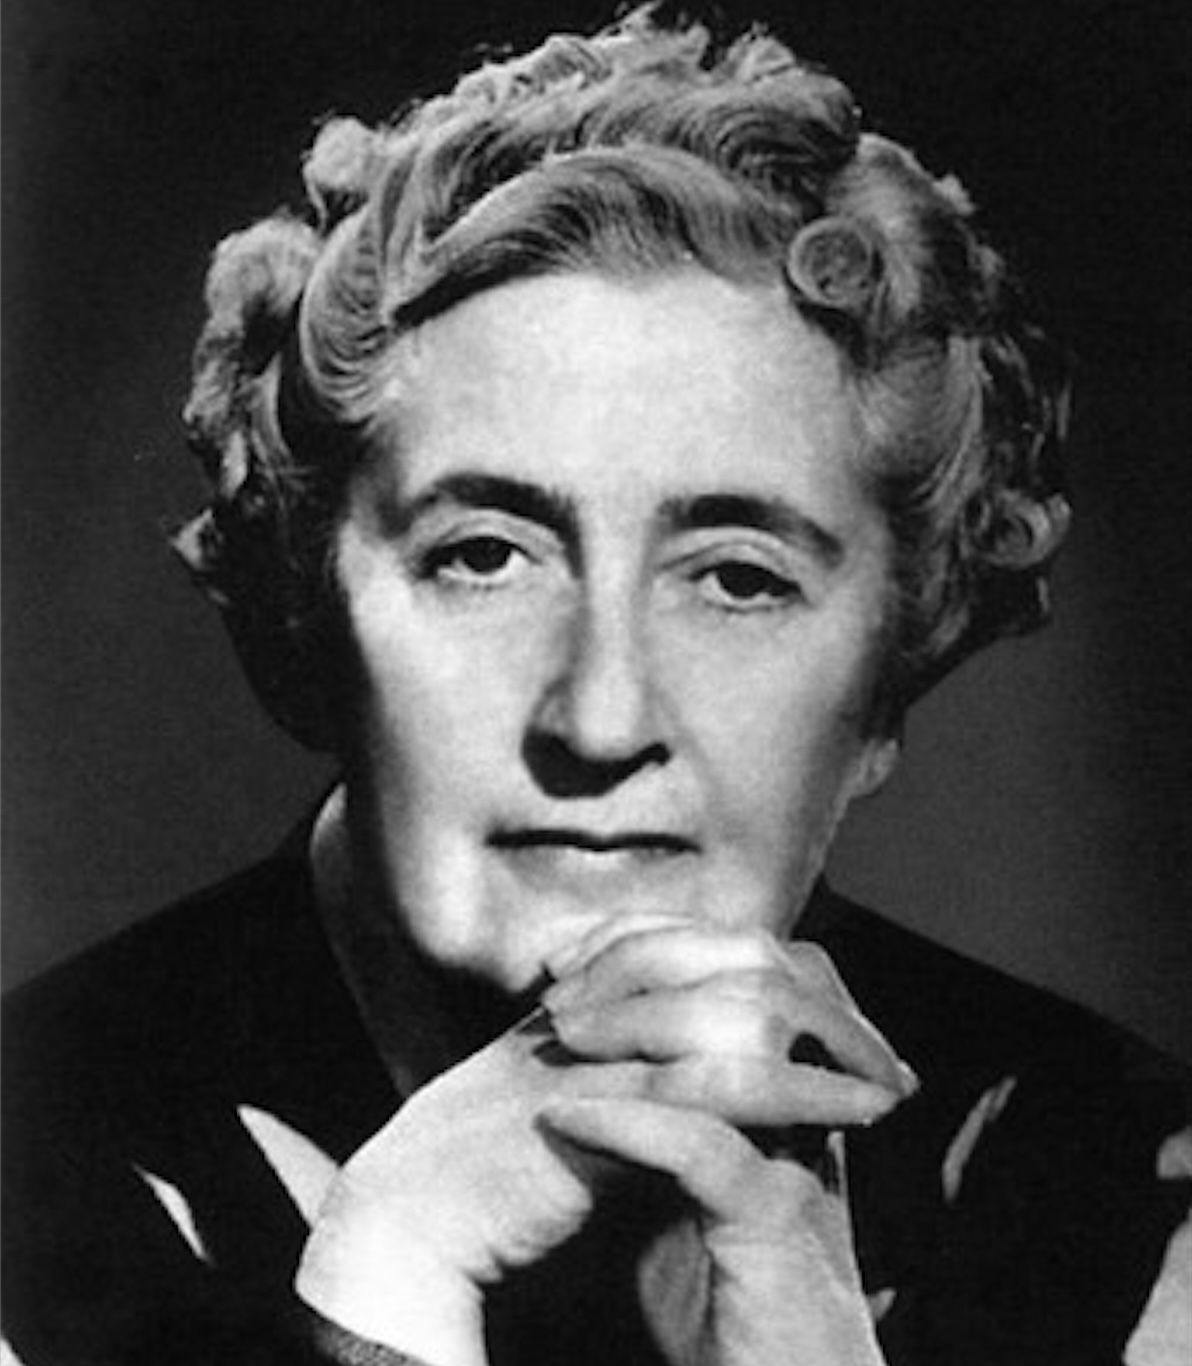 El misterio de los 11 días que desapareció Agatha Christie en la vida real (Foto: Wikimedia Commons)